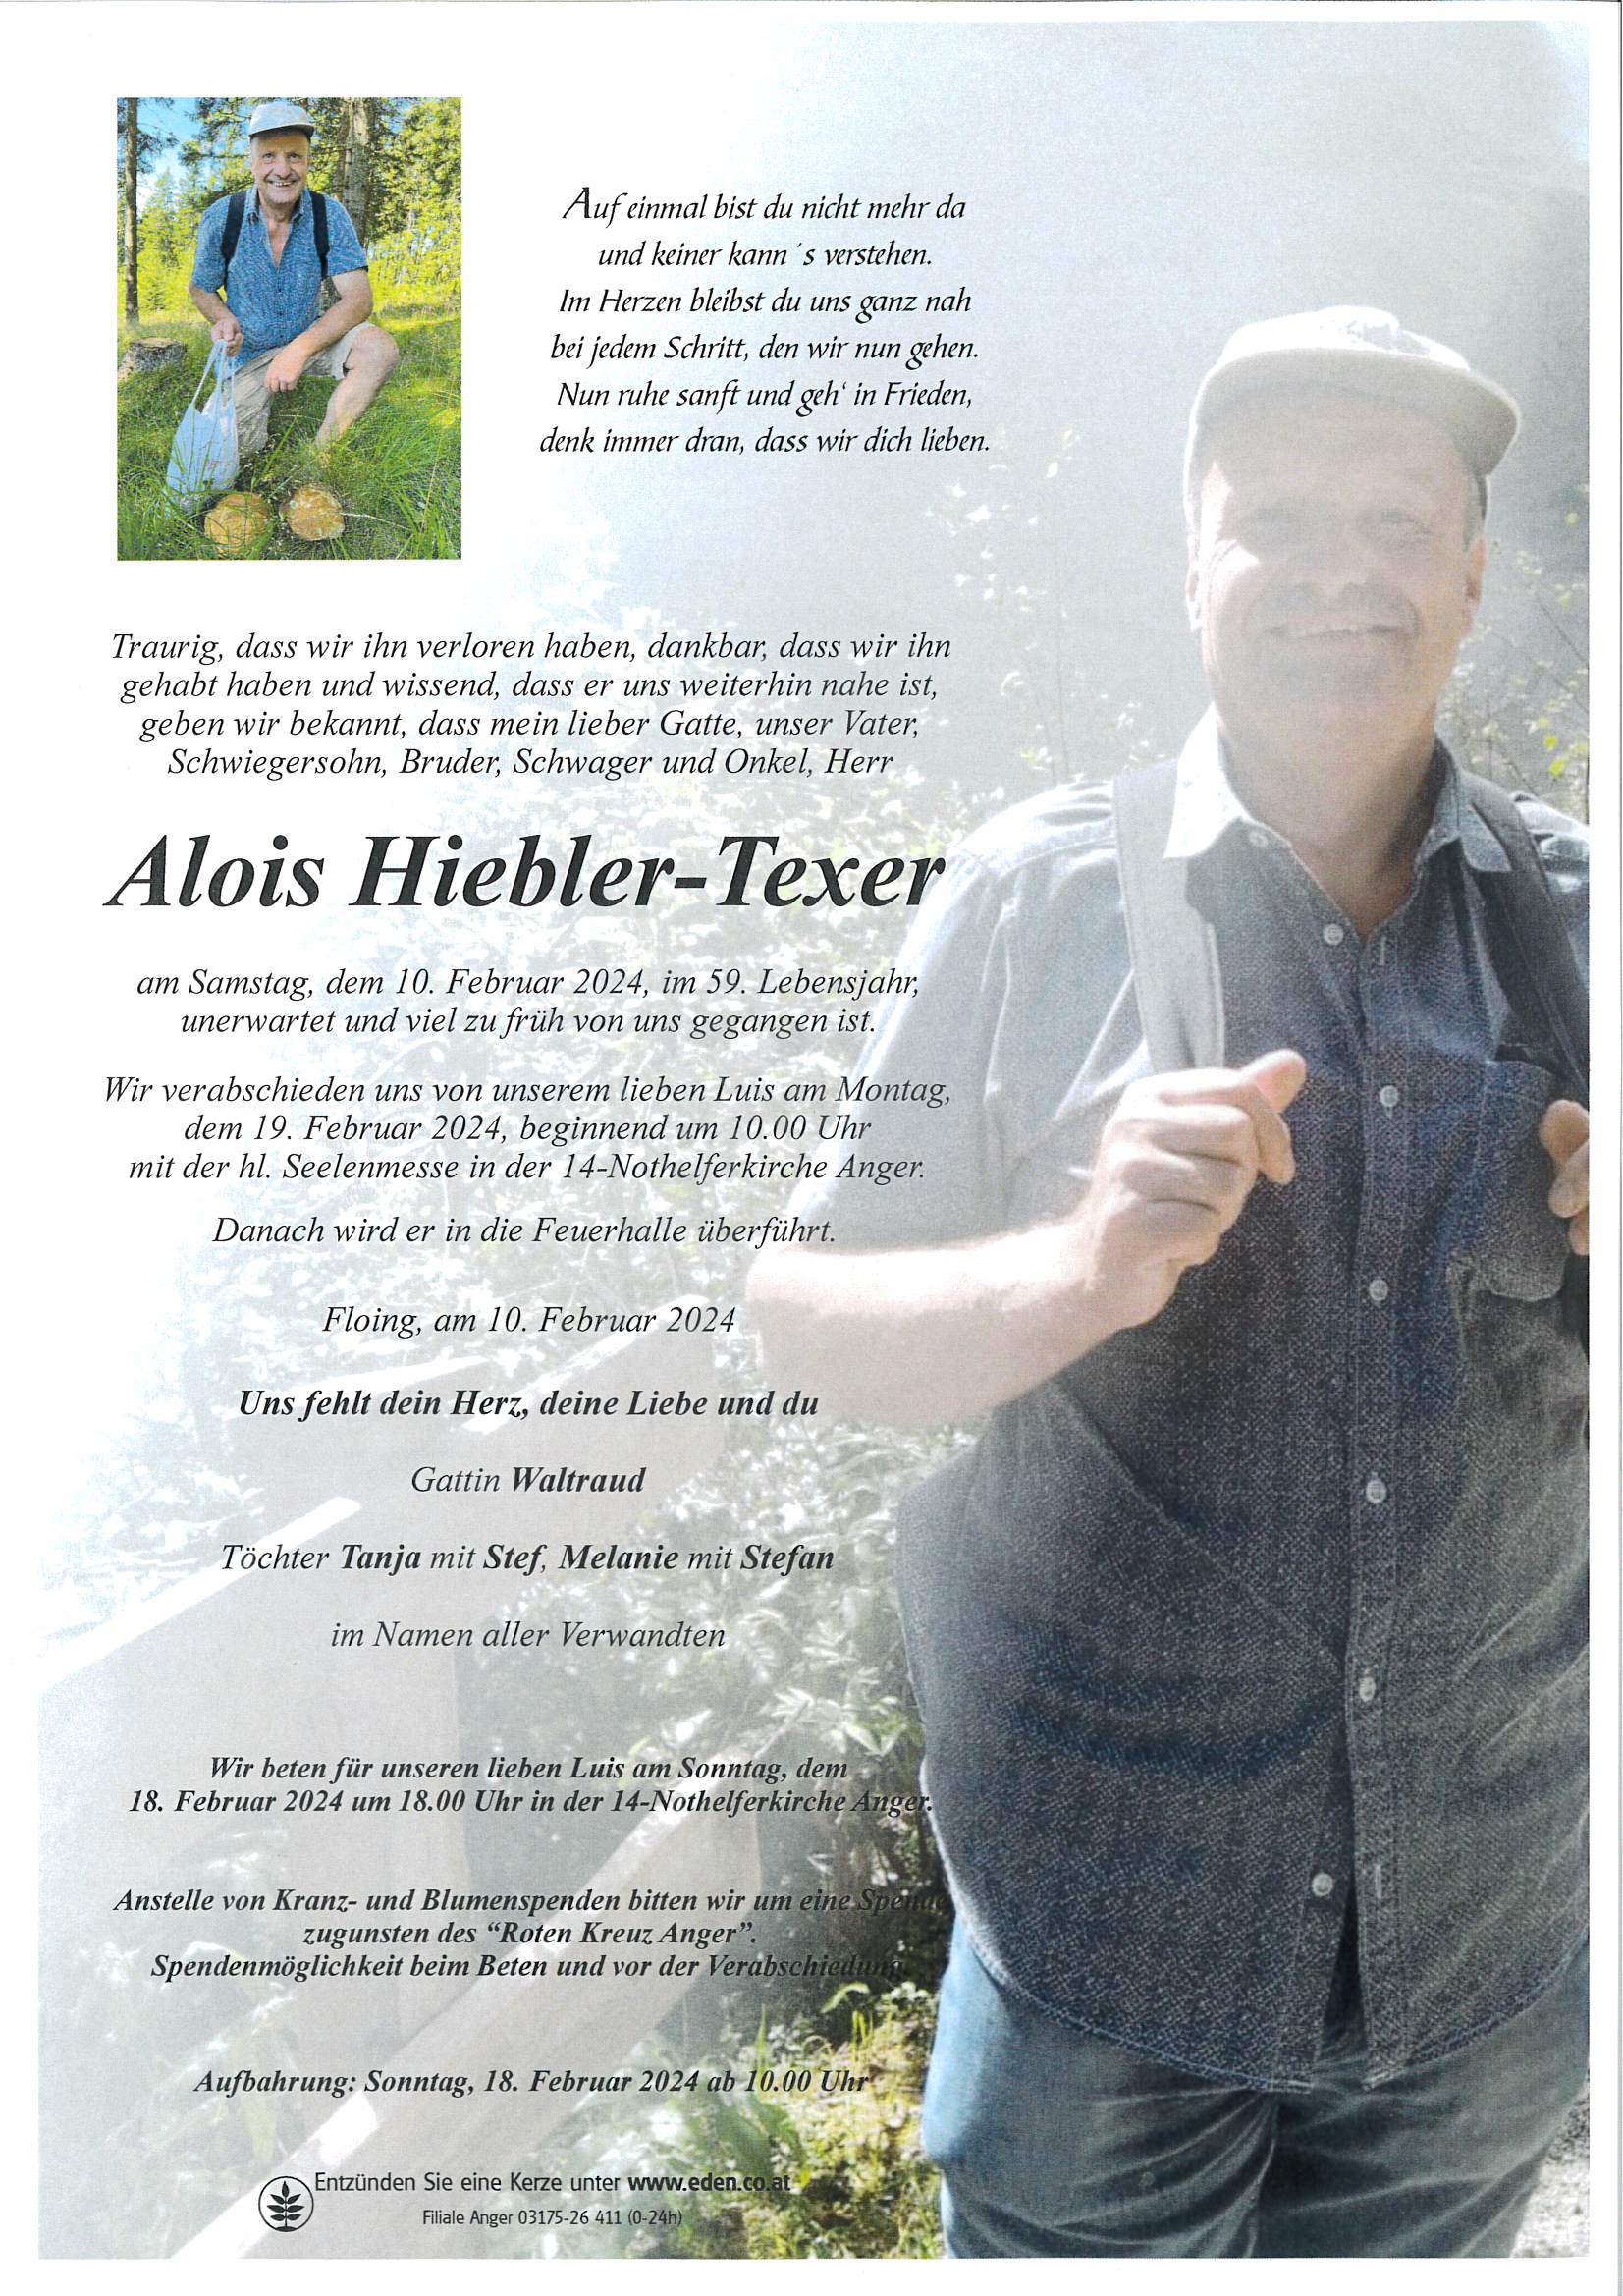 Hiebler-Texer